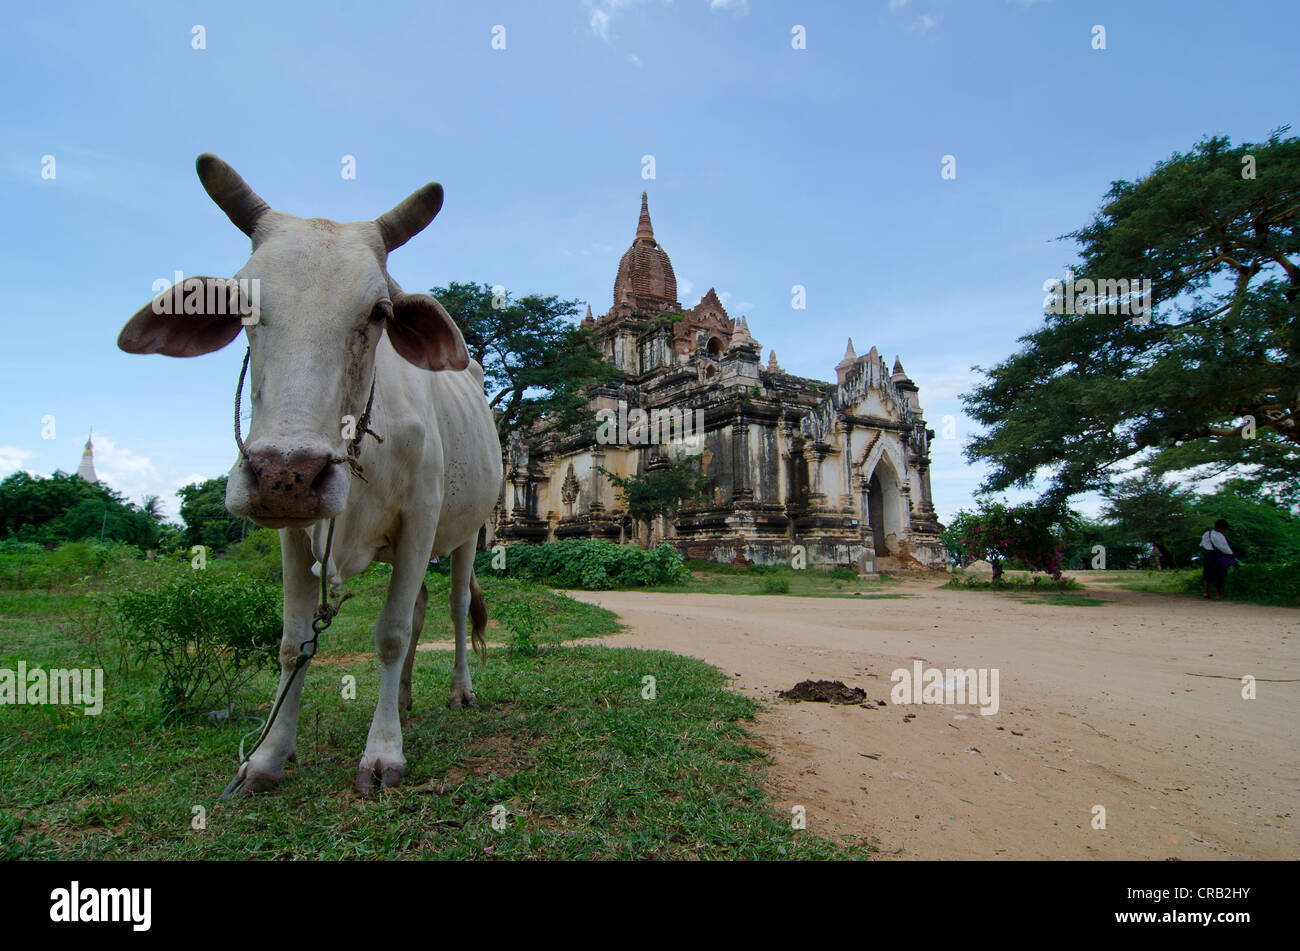 Ox nella parte anteriore di una pagoda, Bagan, MYANMAR Birmania, Asia sud-orientale, Asia Foto Stock